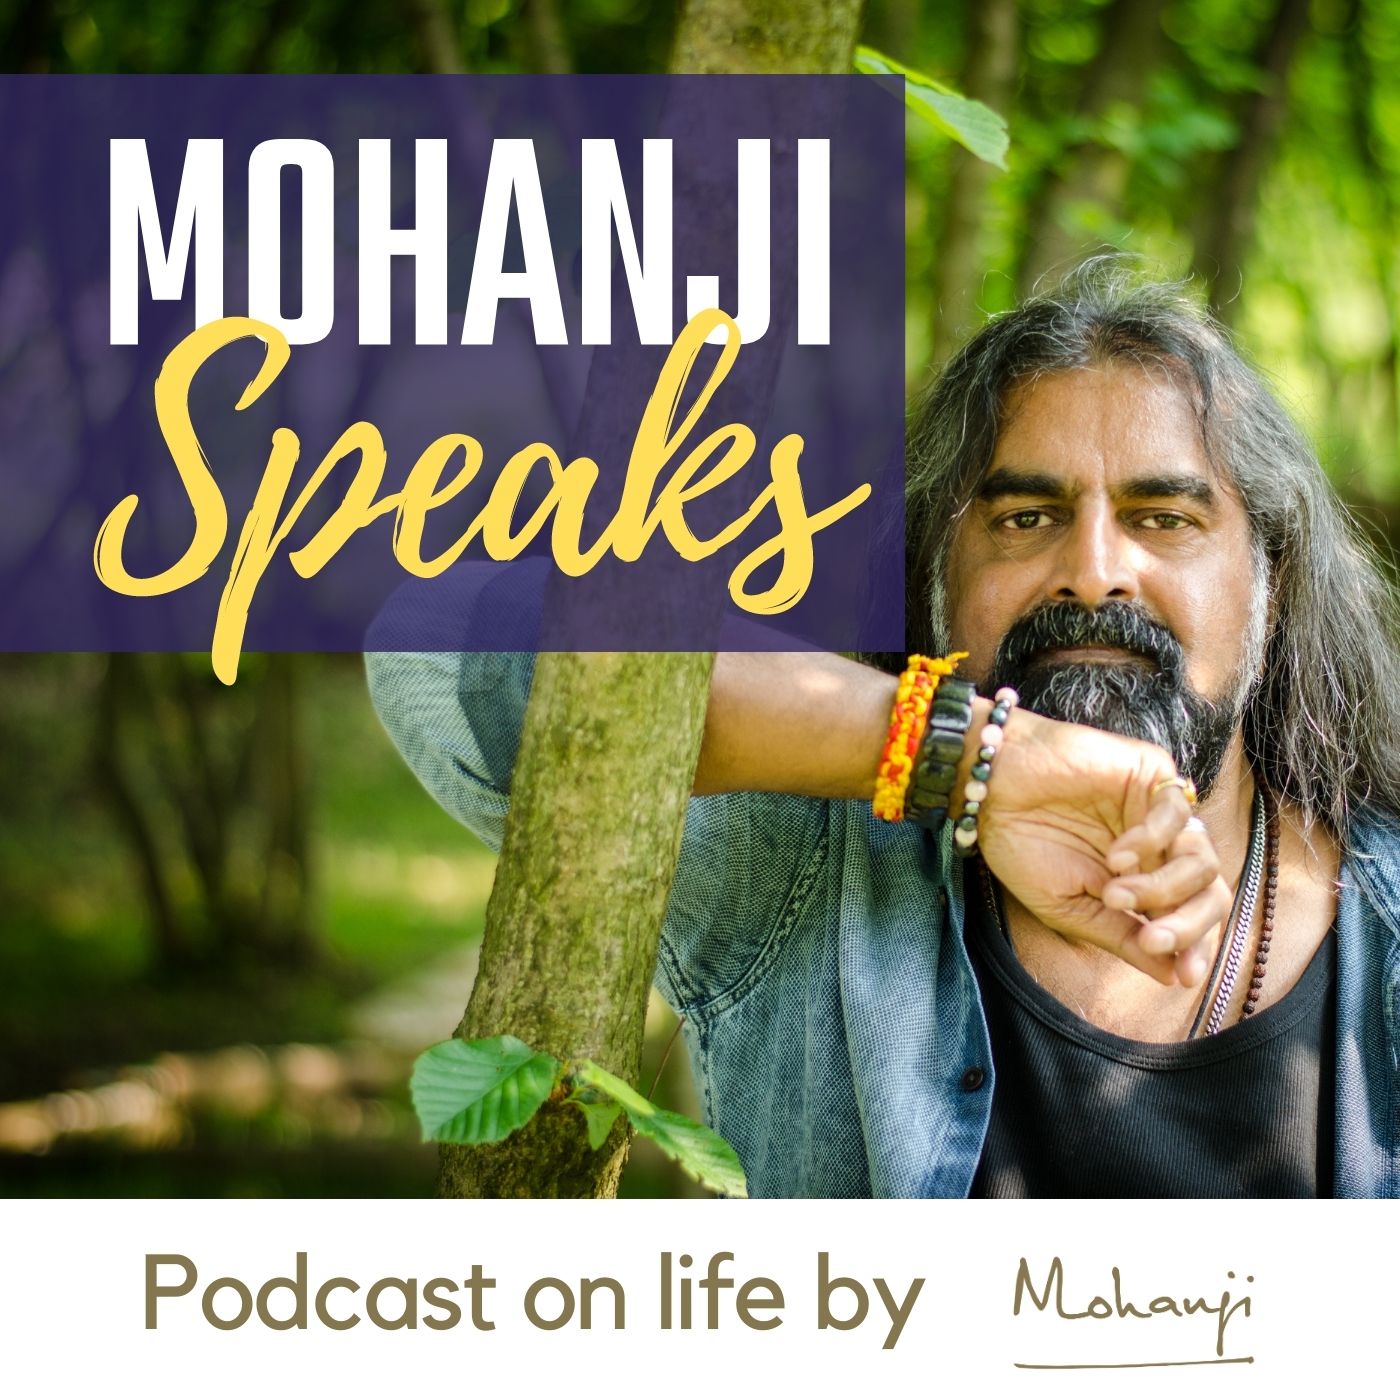 Mohanji Speaks